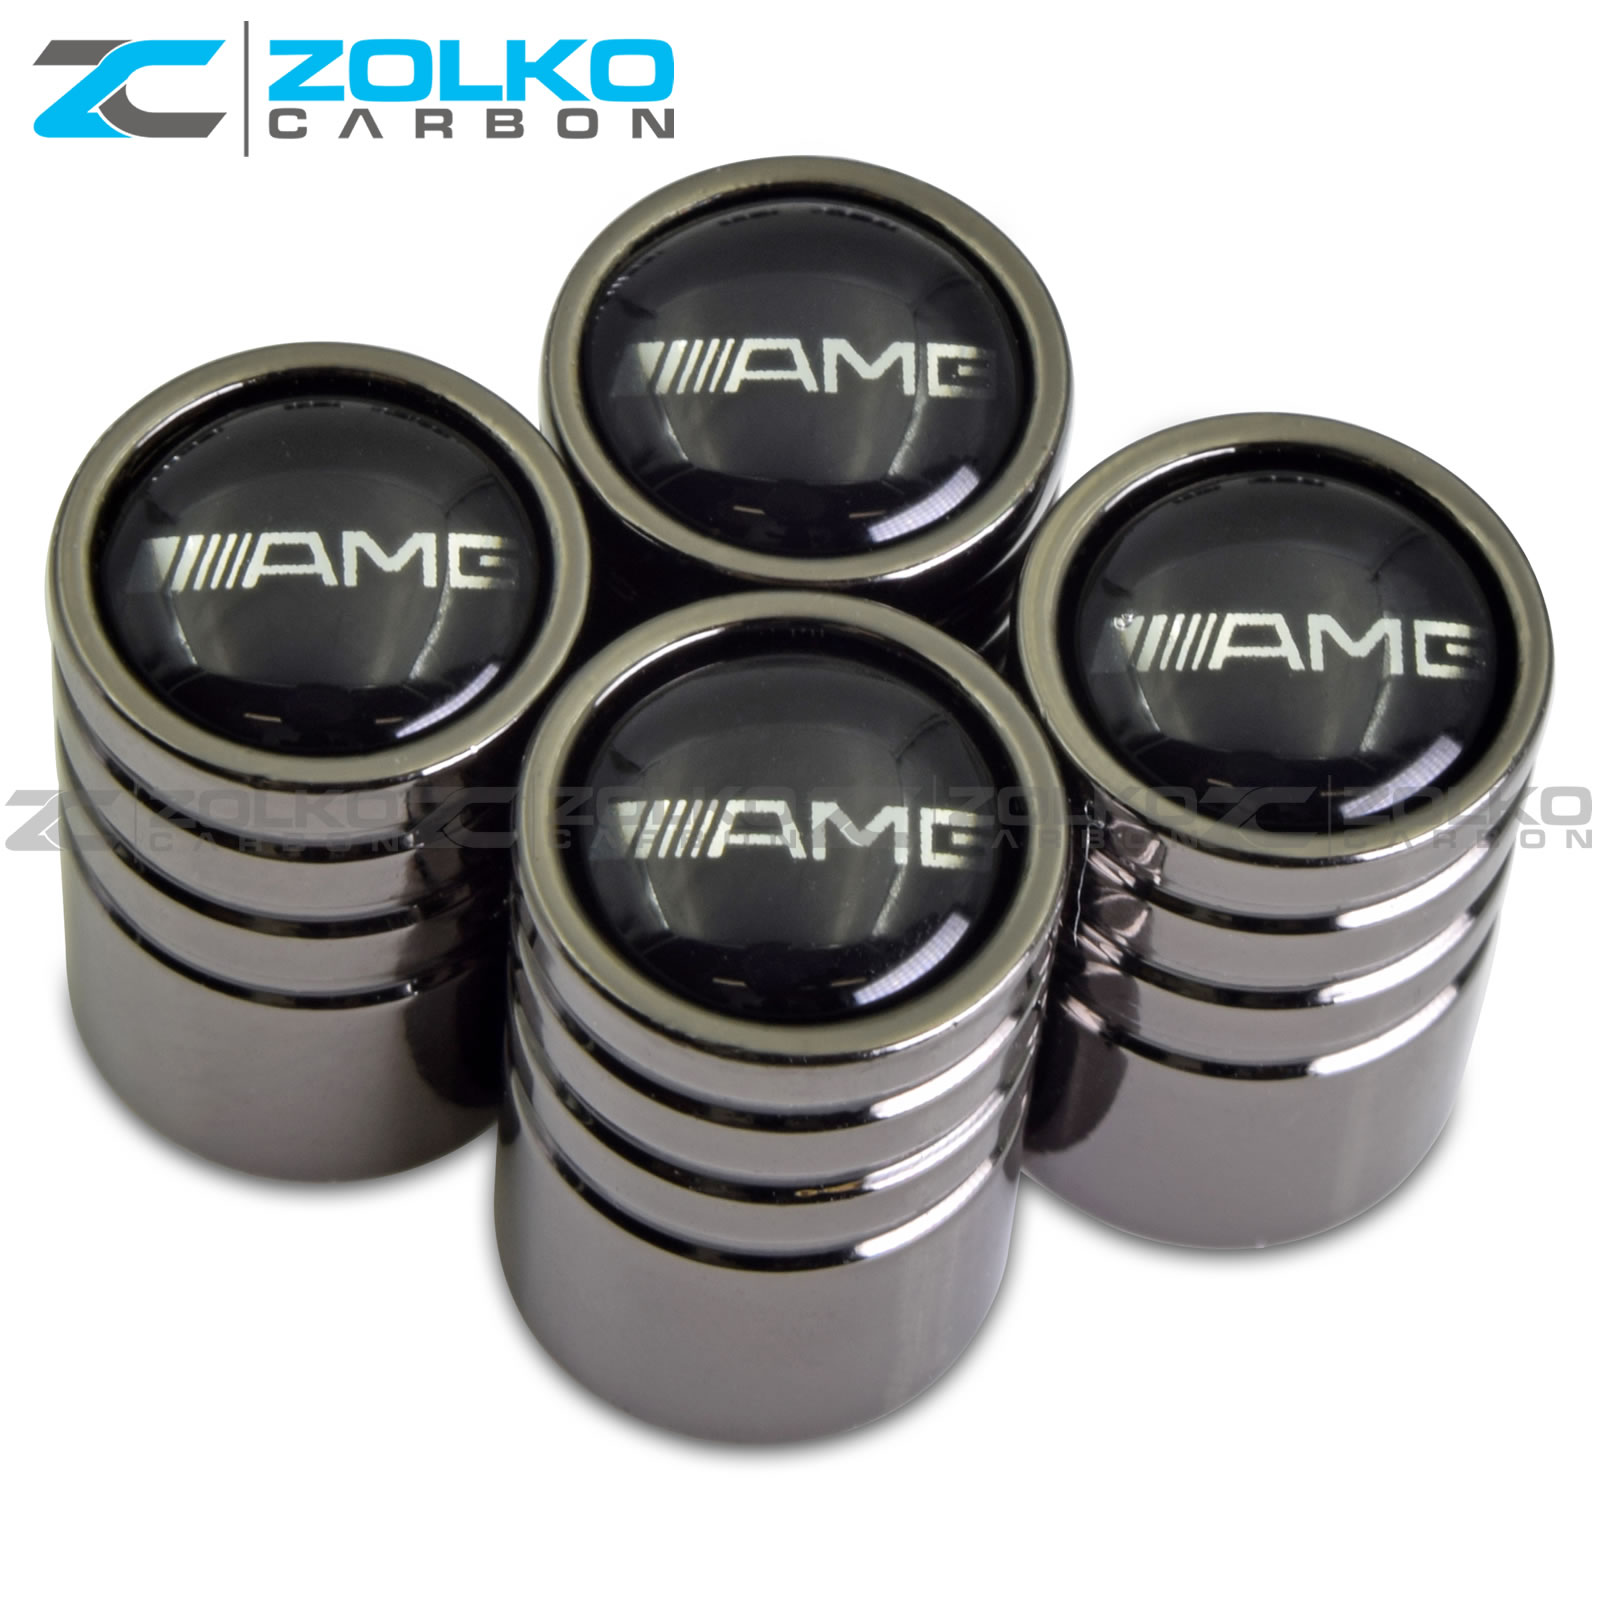 Black AMG Valve Caps.